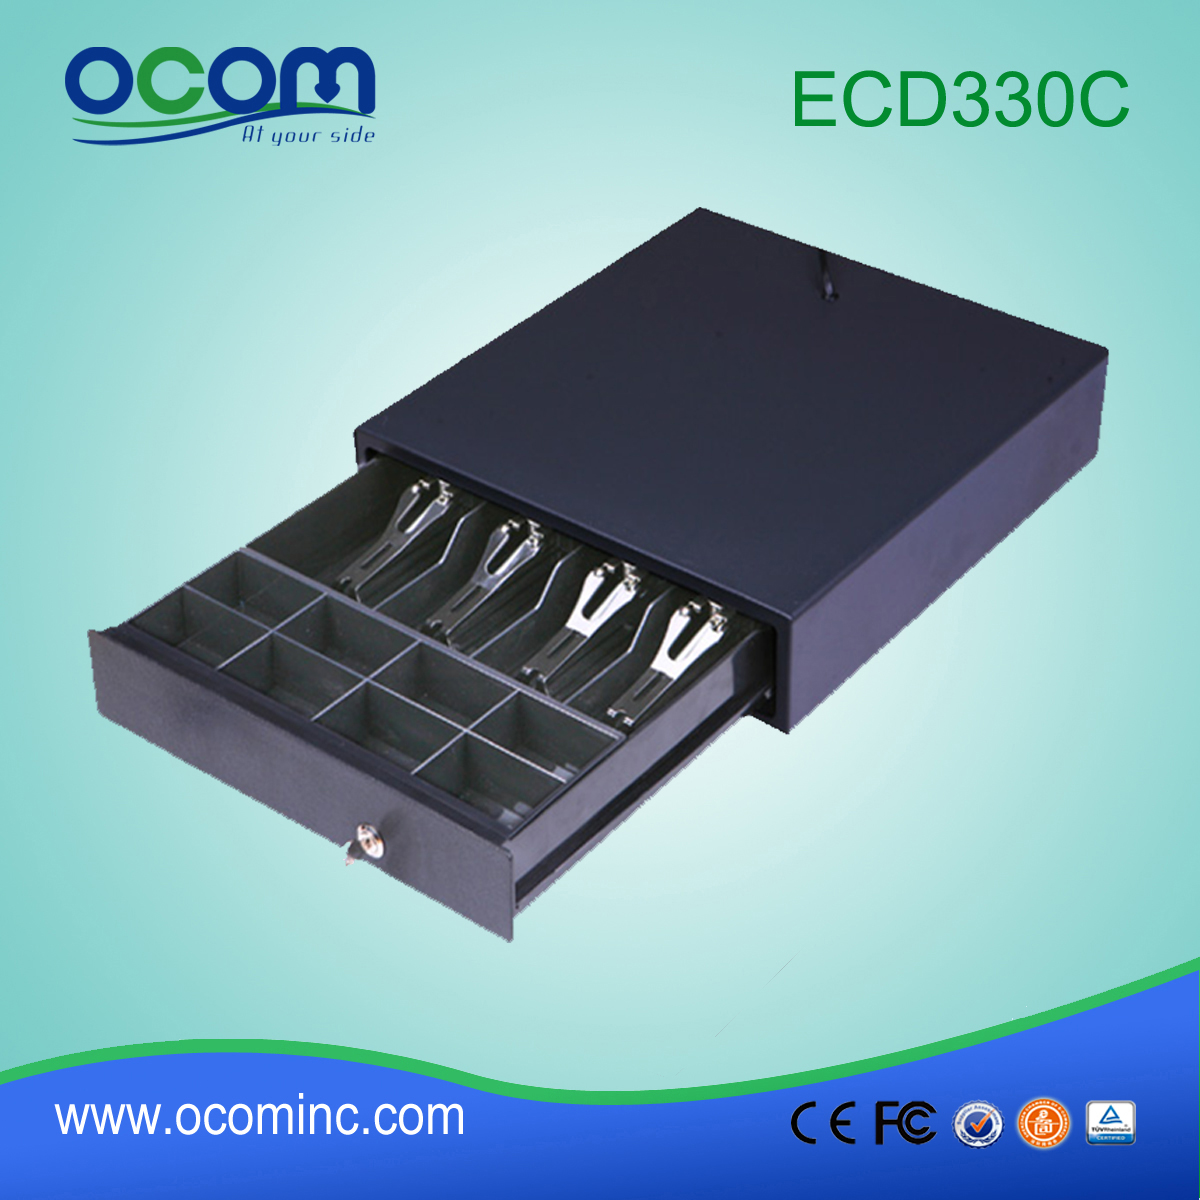 (ECD330C) Новый черный ящик pos цвета черного цвета